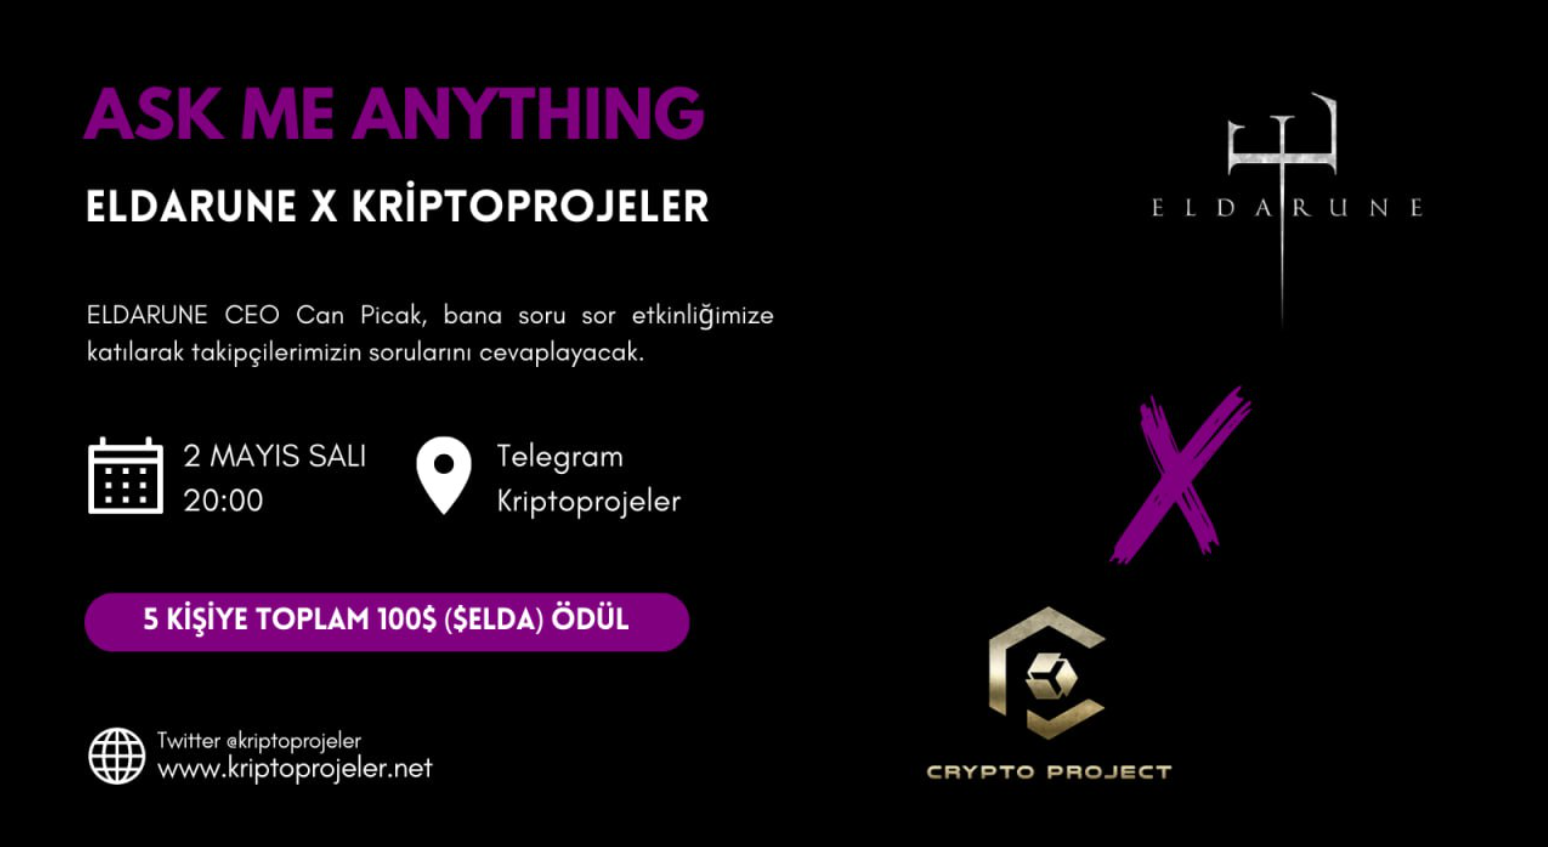 @kriptoprojeler  kanalında  @PlayEldarune  ile ödüllü A.M.A oturumu gerçekleştireceğiz.